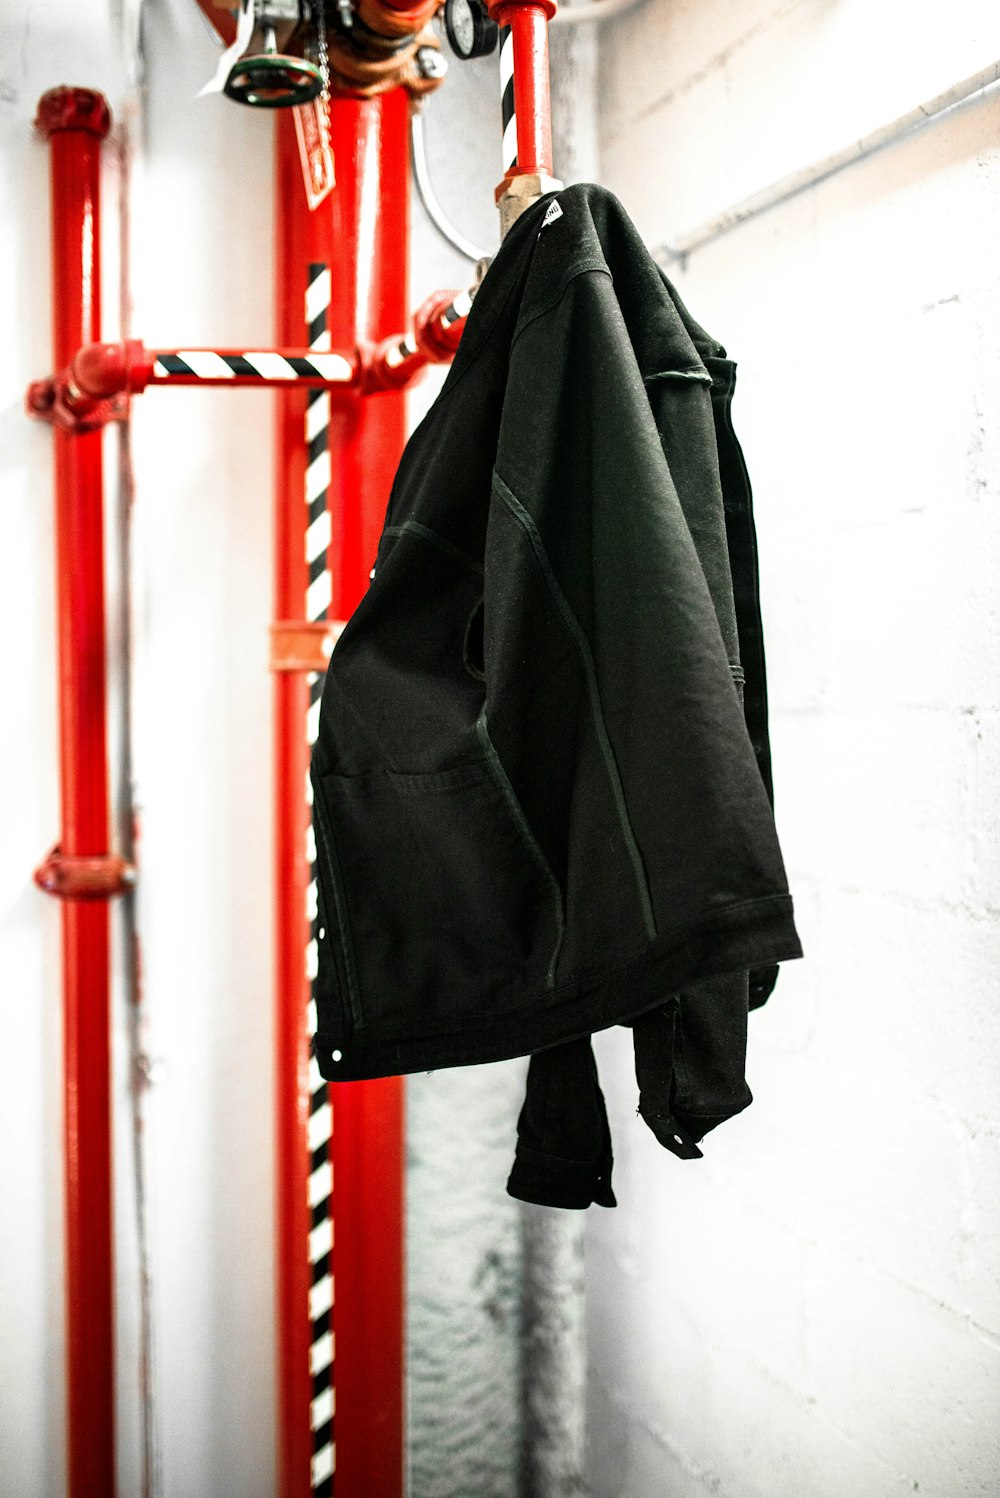 schwarzer Mantel hängt an rotem Mantel Raack